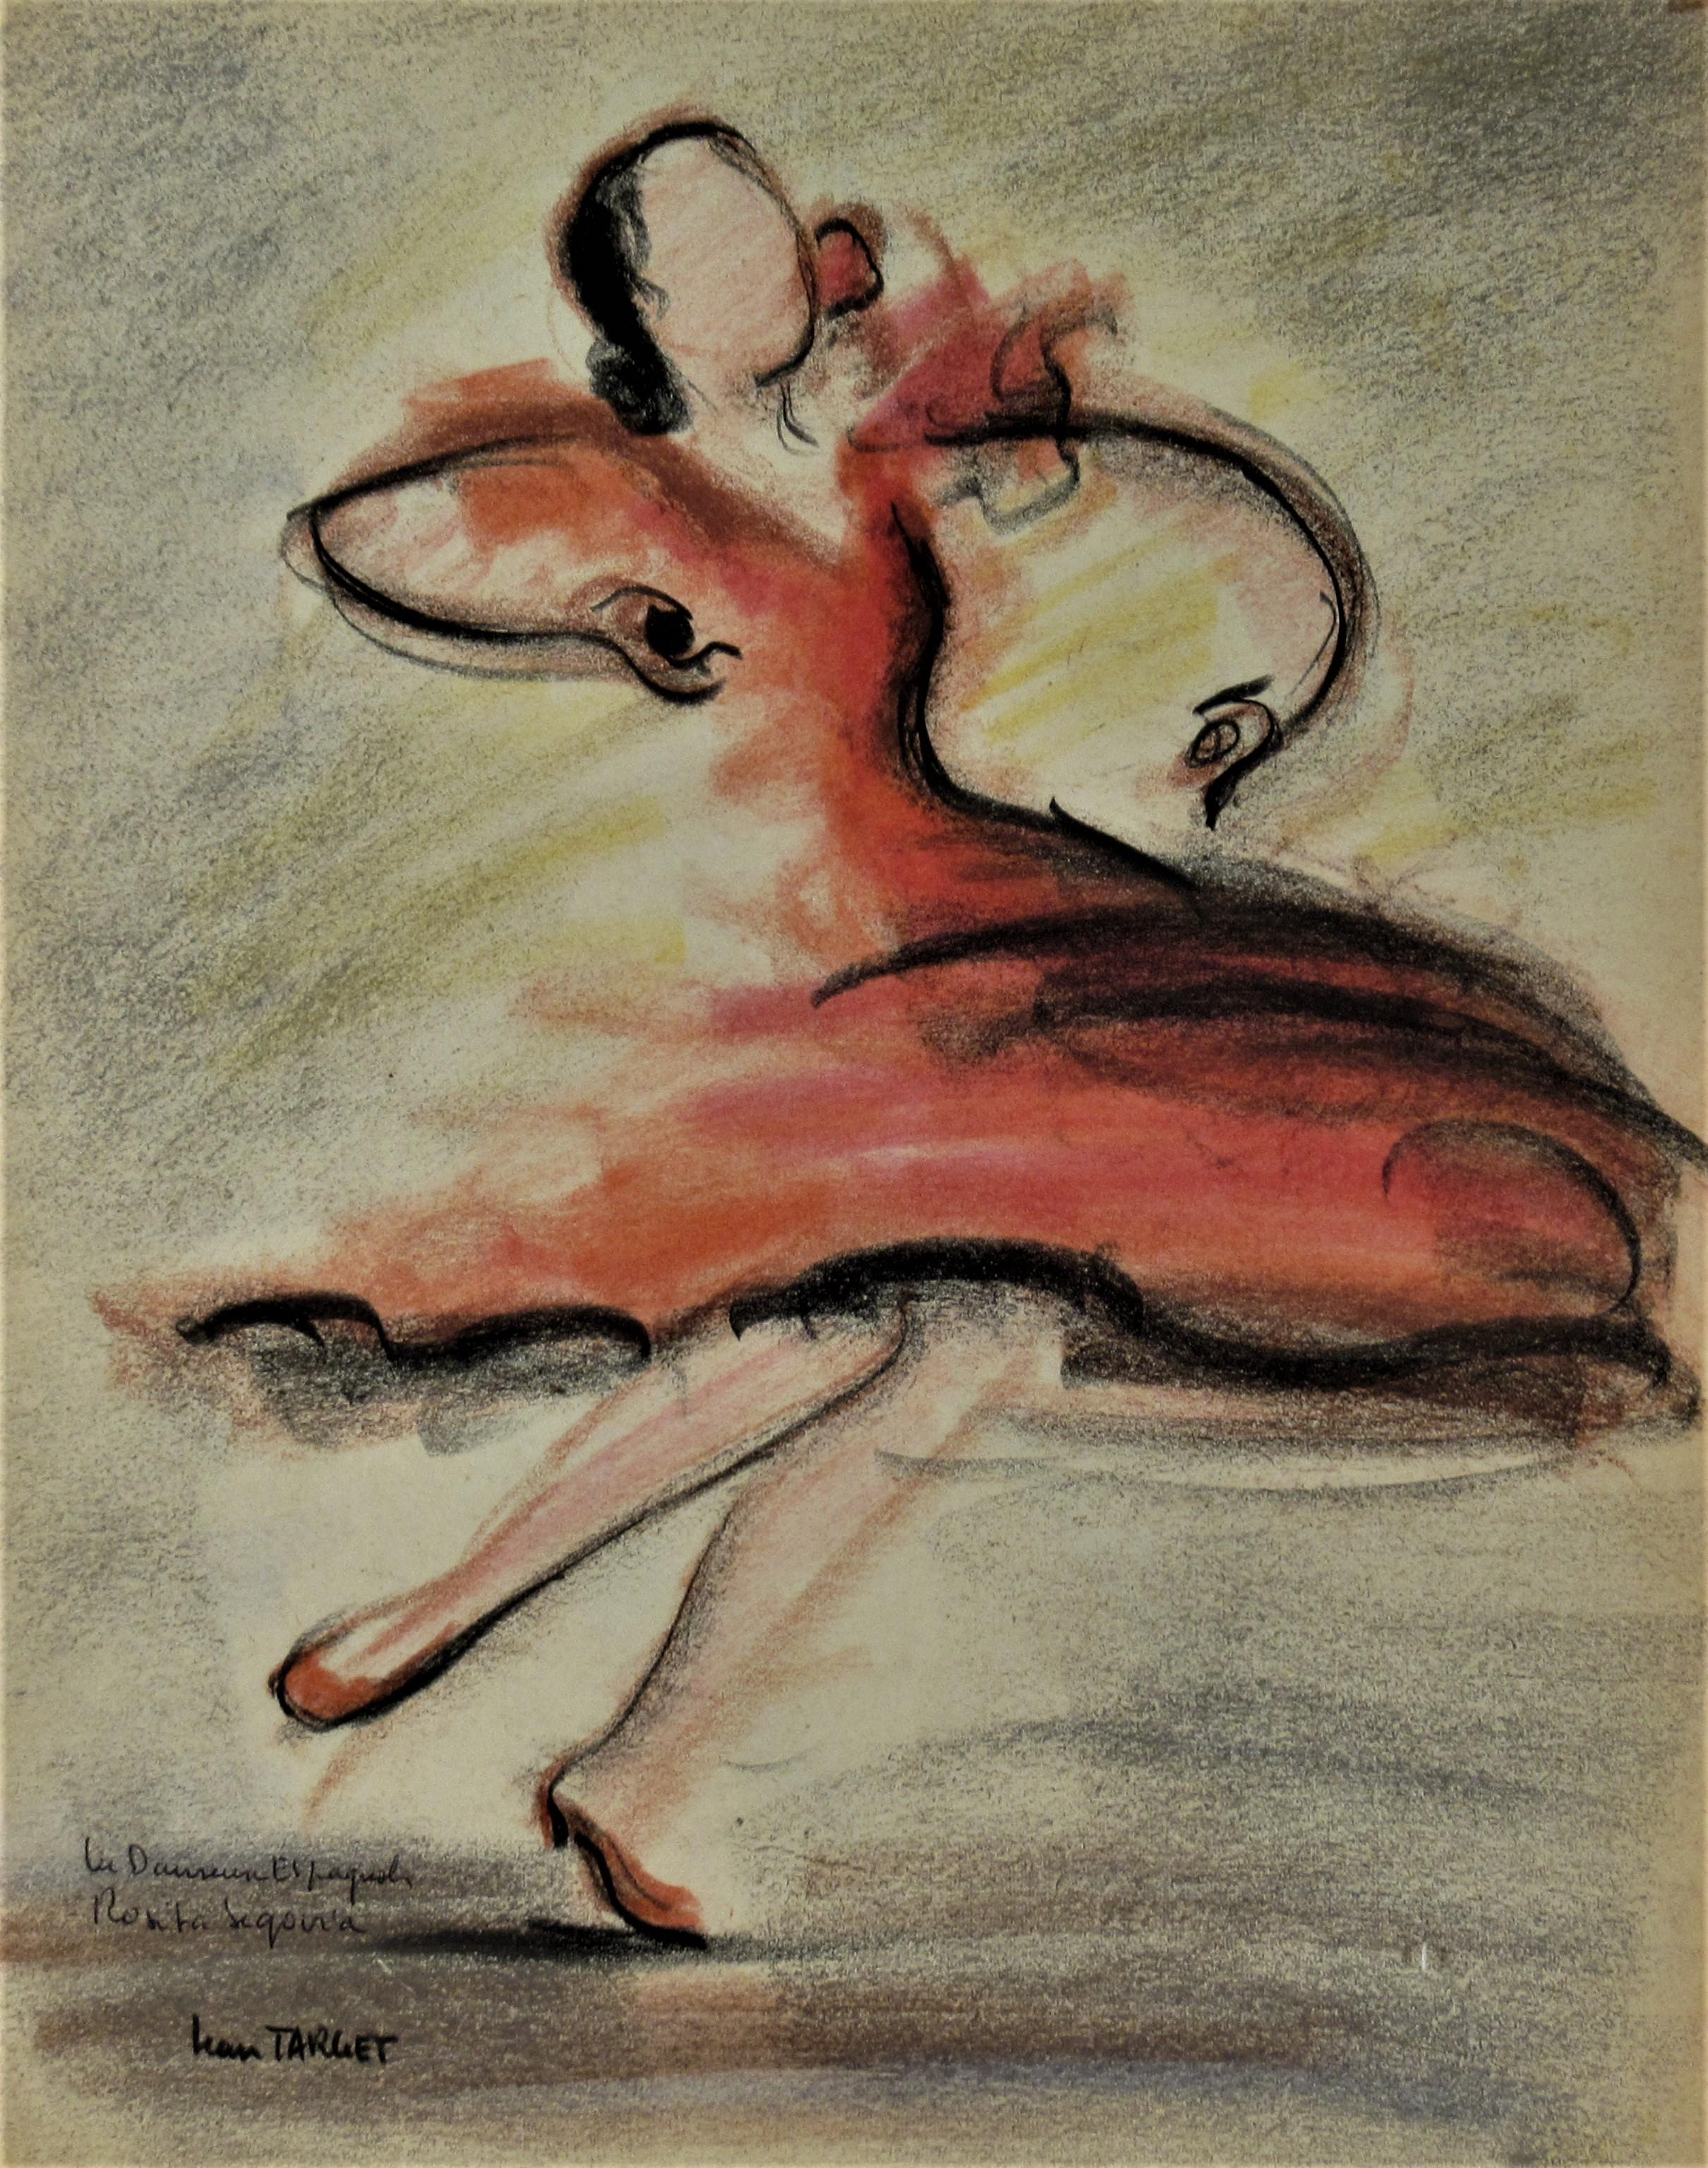 La Danseuse Espagnol Rosita Segovia (Die spanische Tänzerin Rosita Segovia)